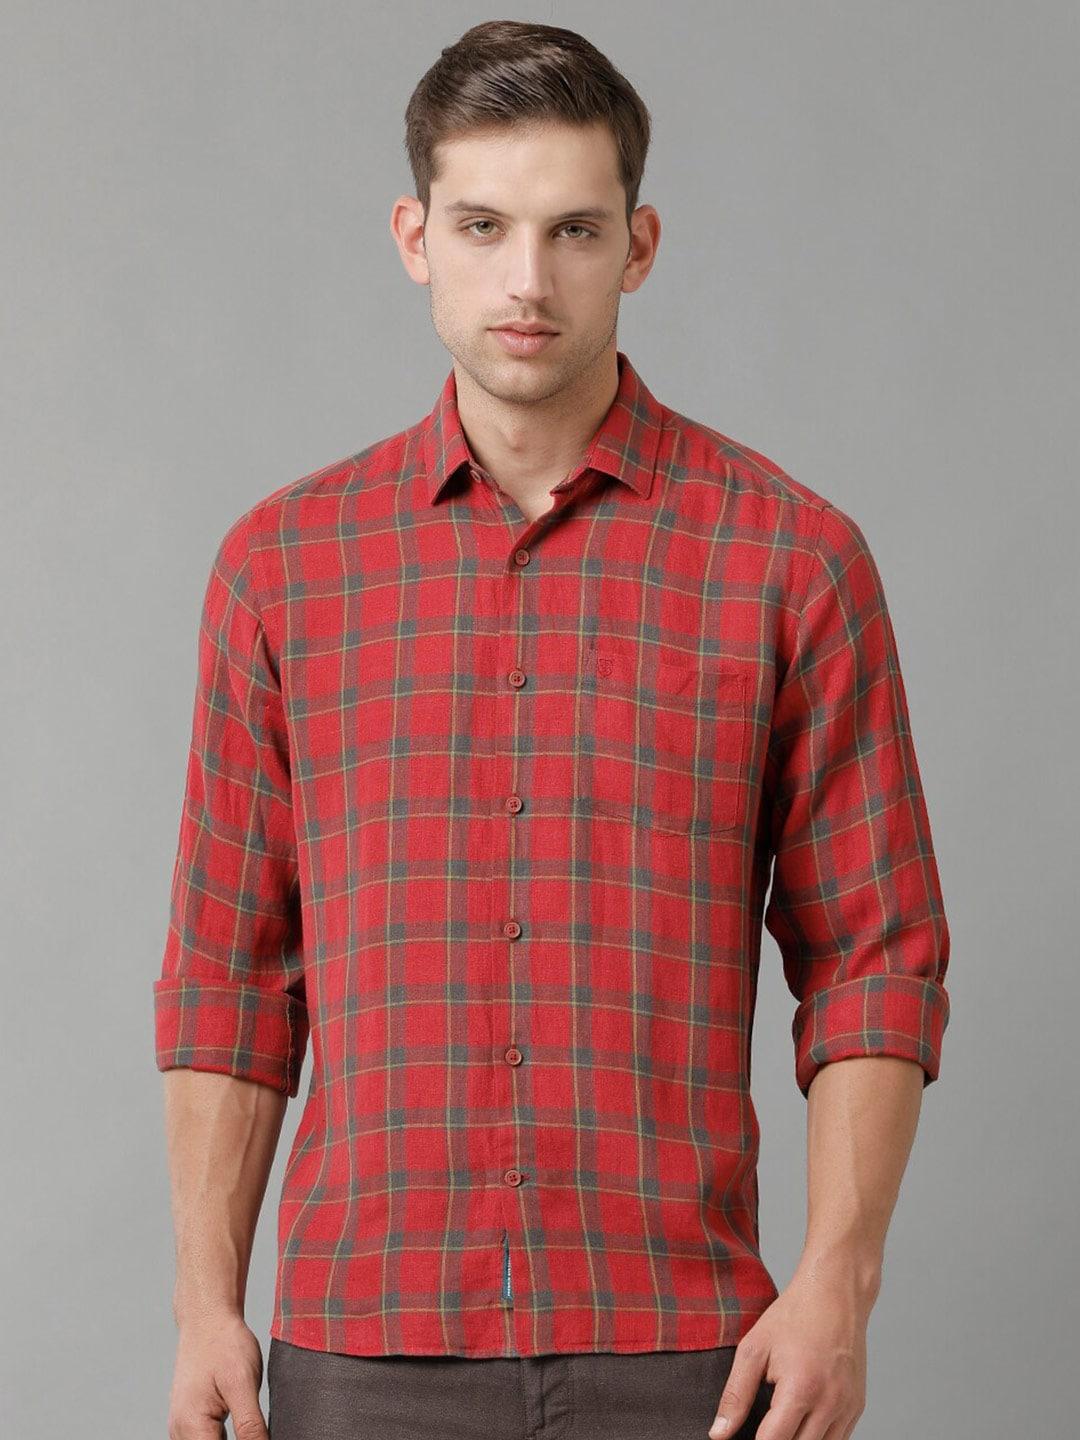 linen-club-contemporary-opaque-tartan-checked-pure-linen-casual-shirt